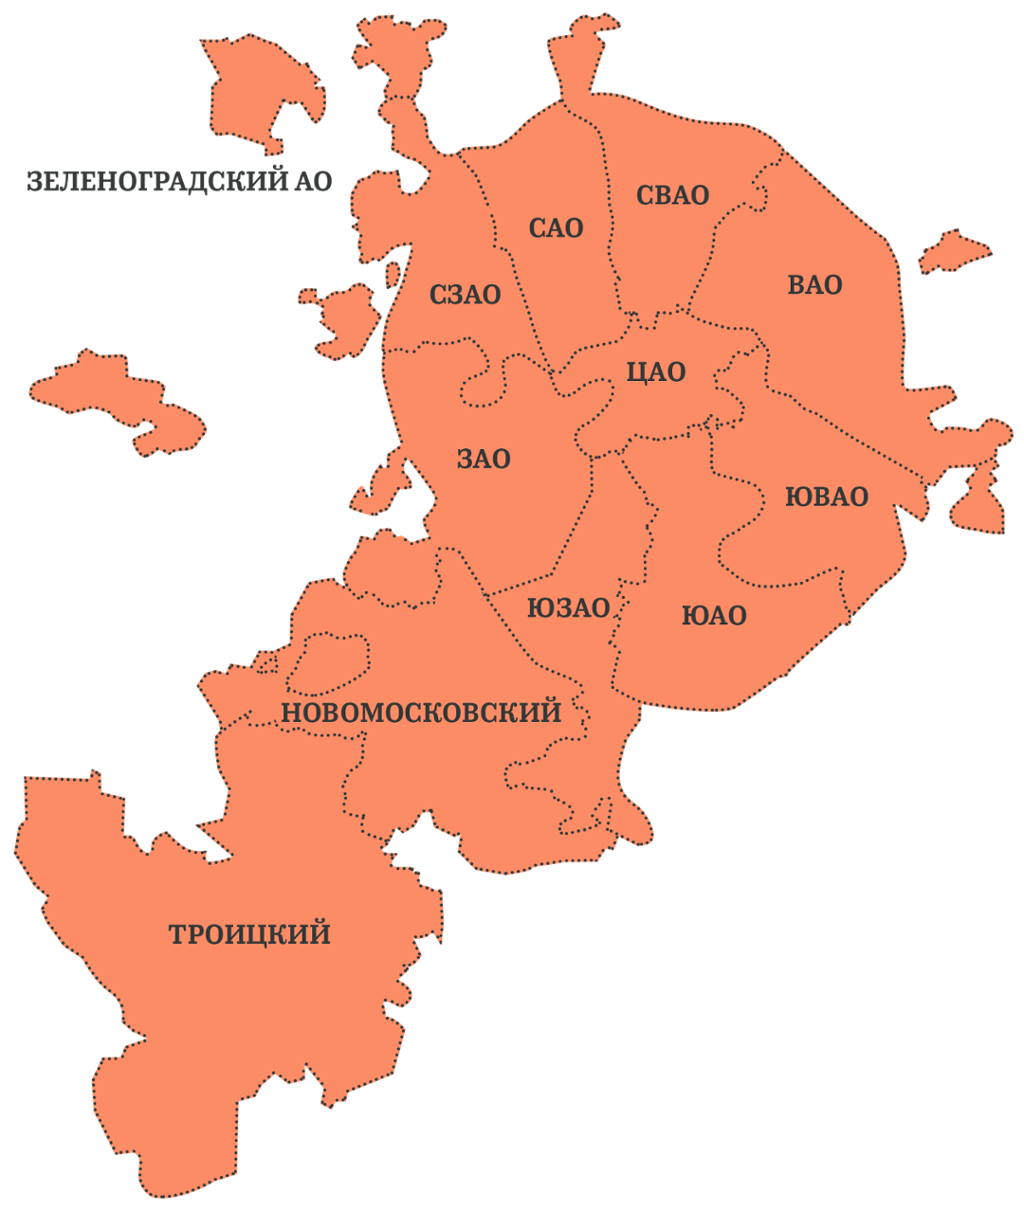 Карта территориального деления города Москвы